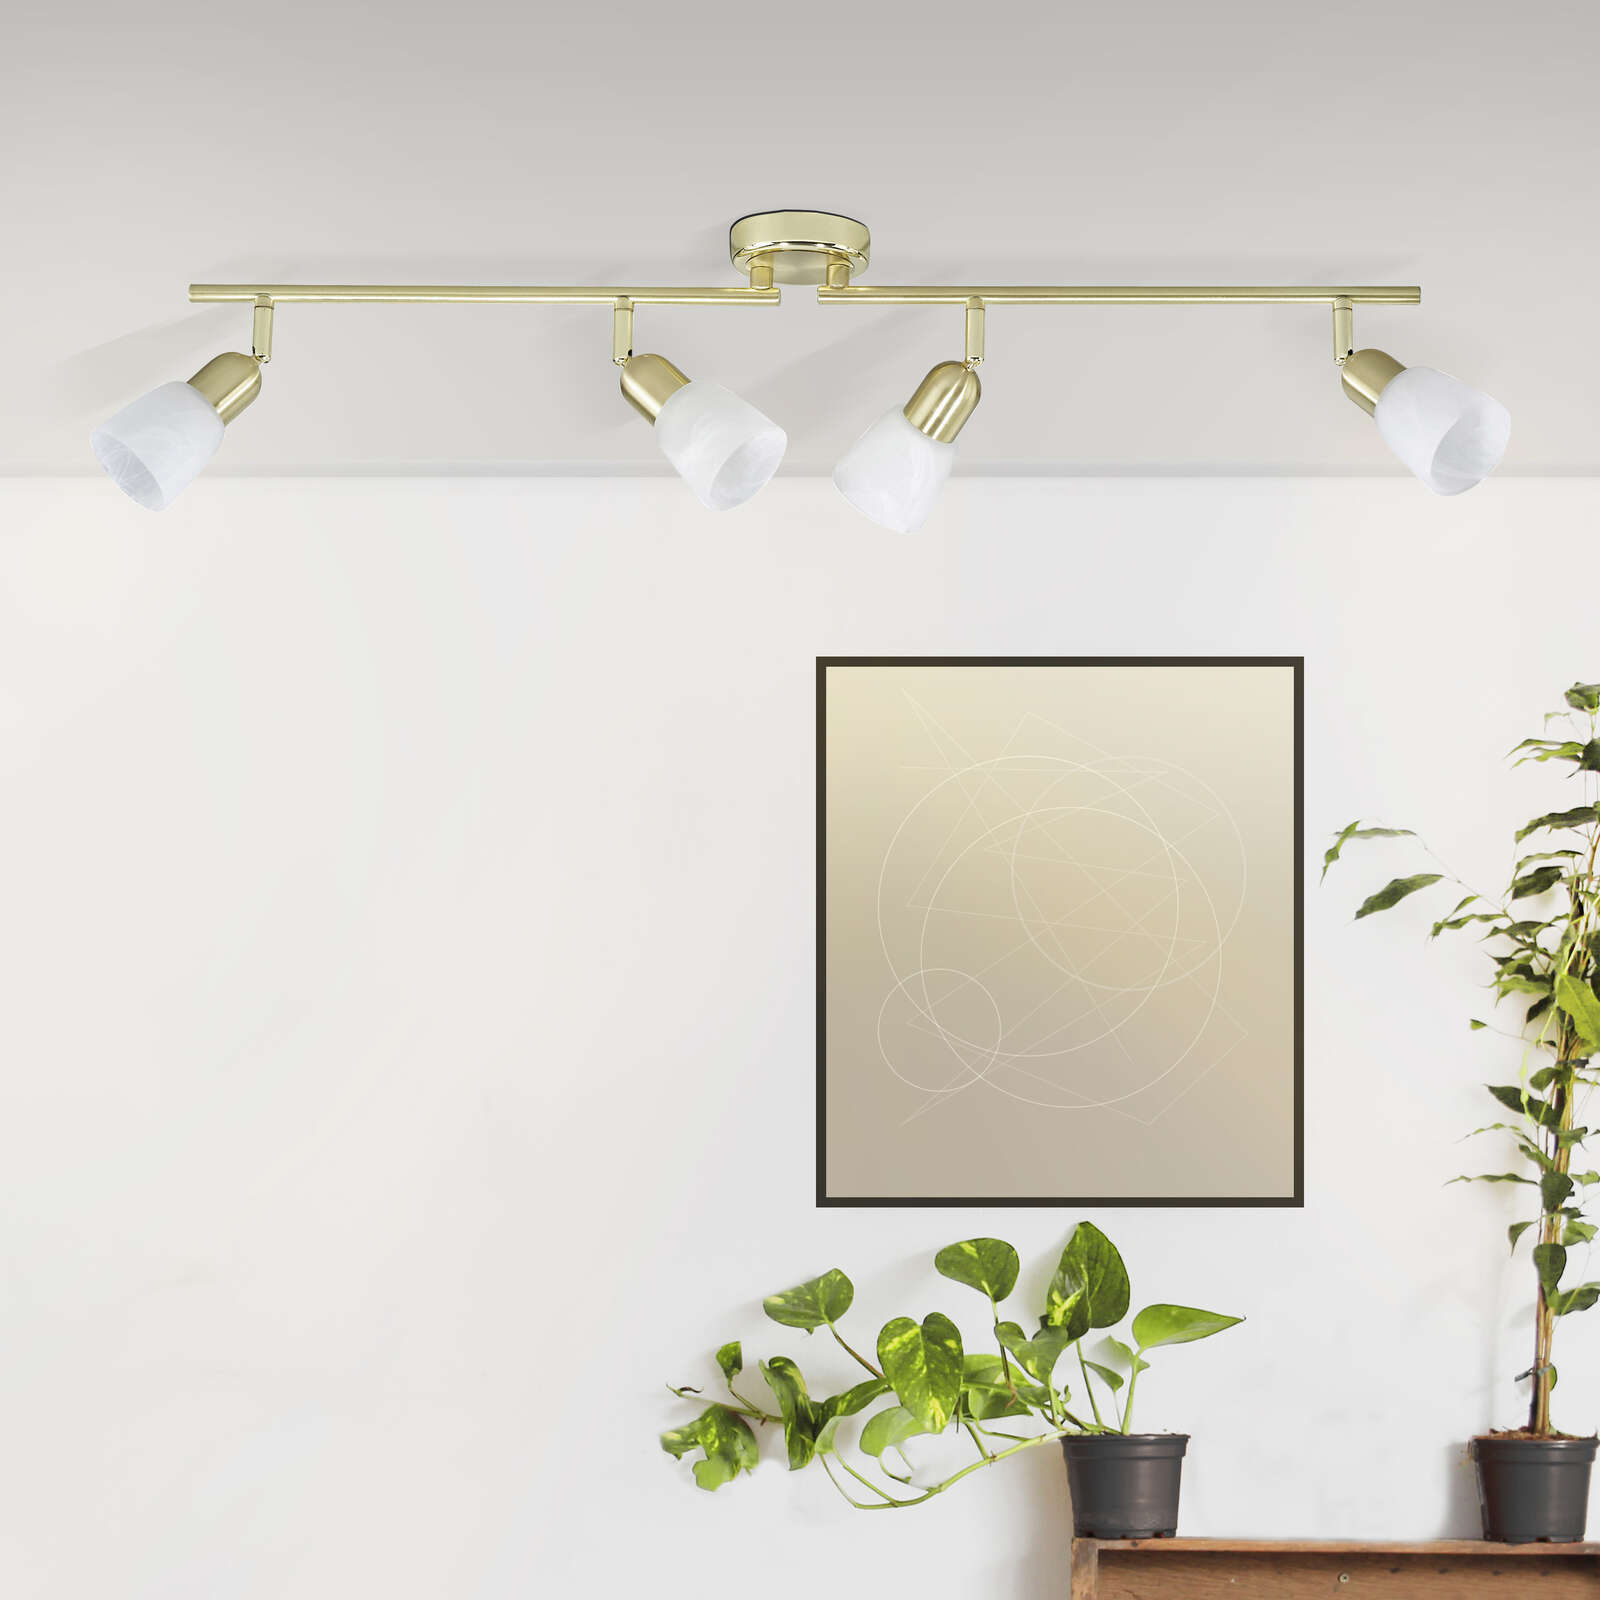             Metalen plafondlamp - Noemi 1 - Goud
        